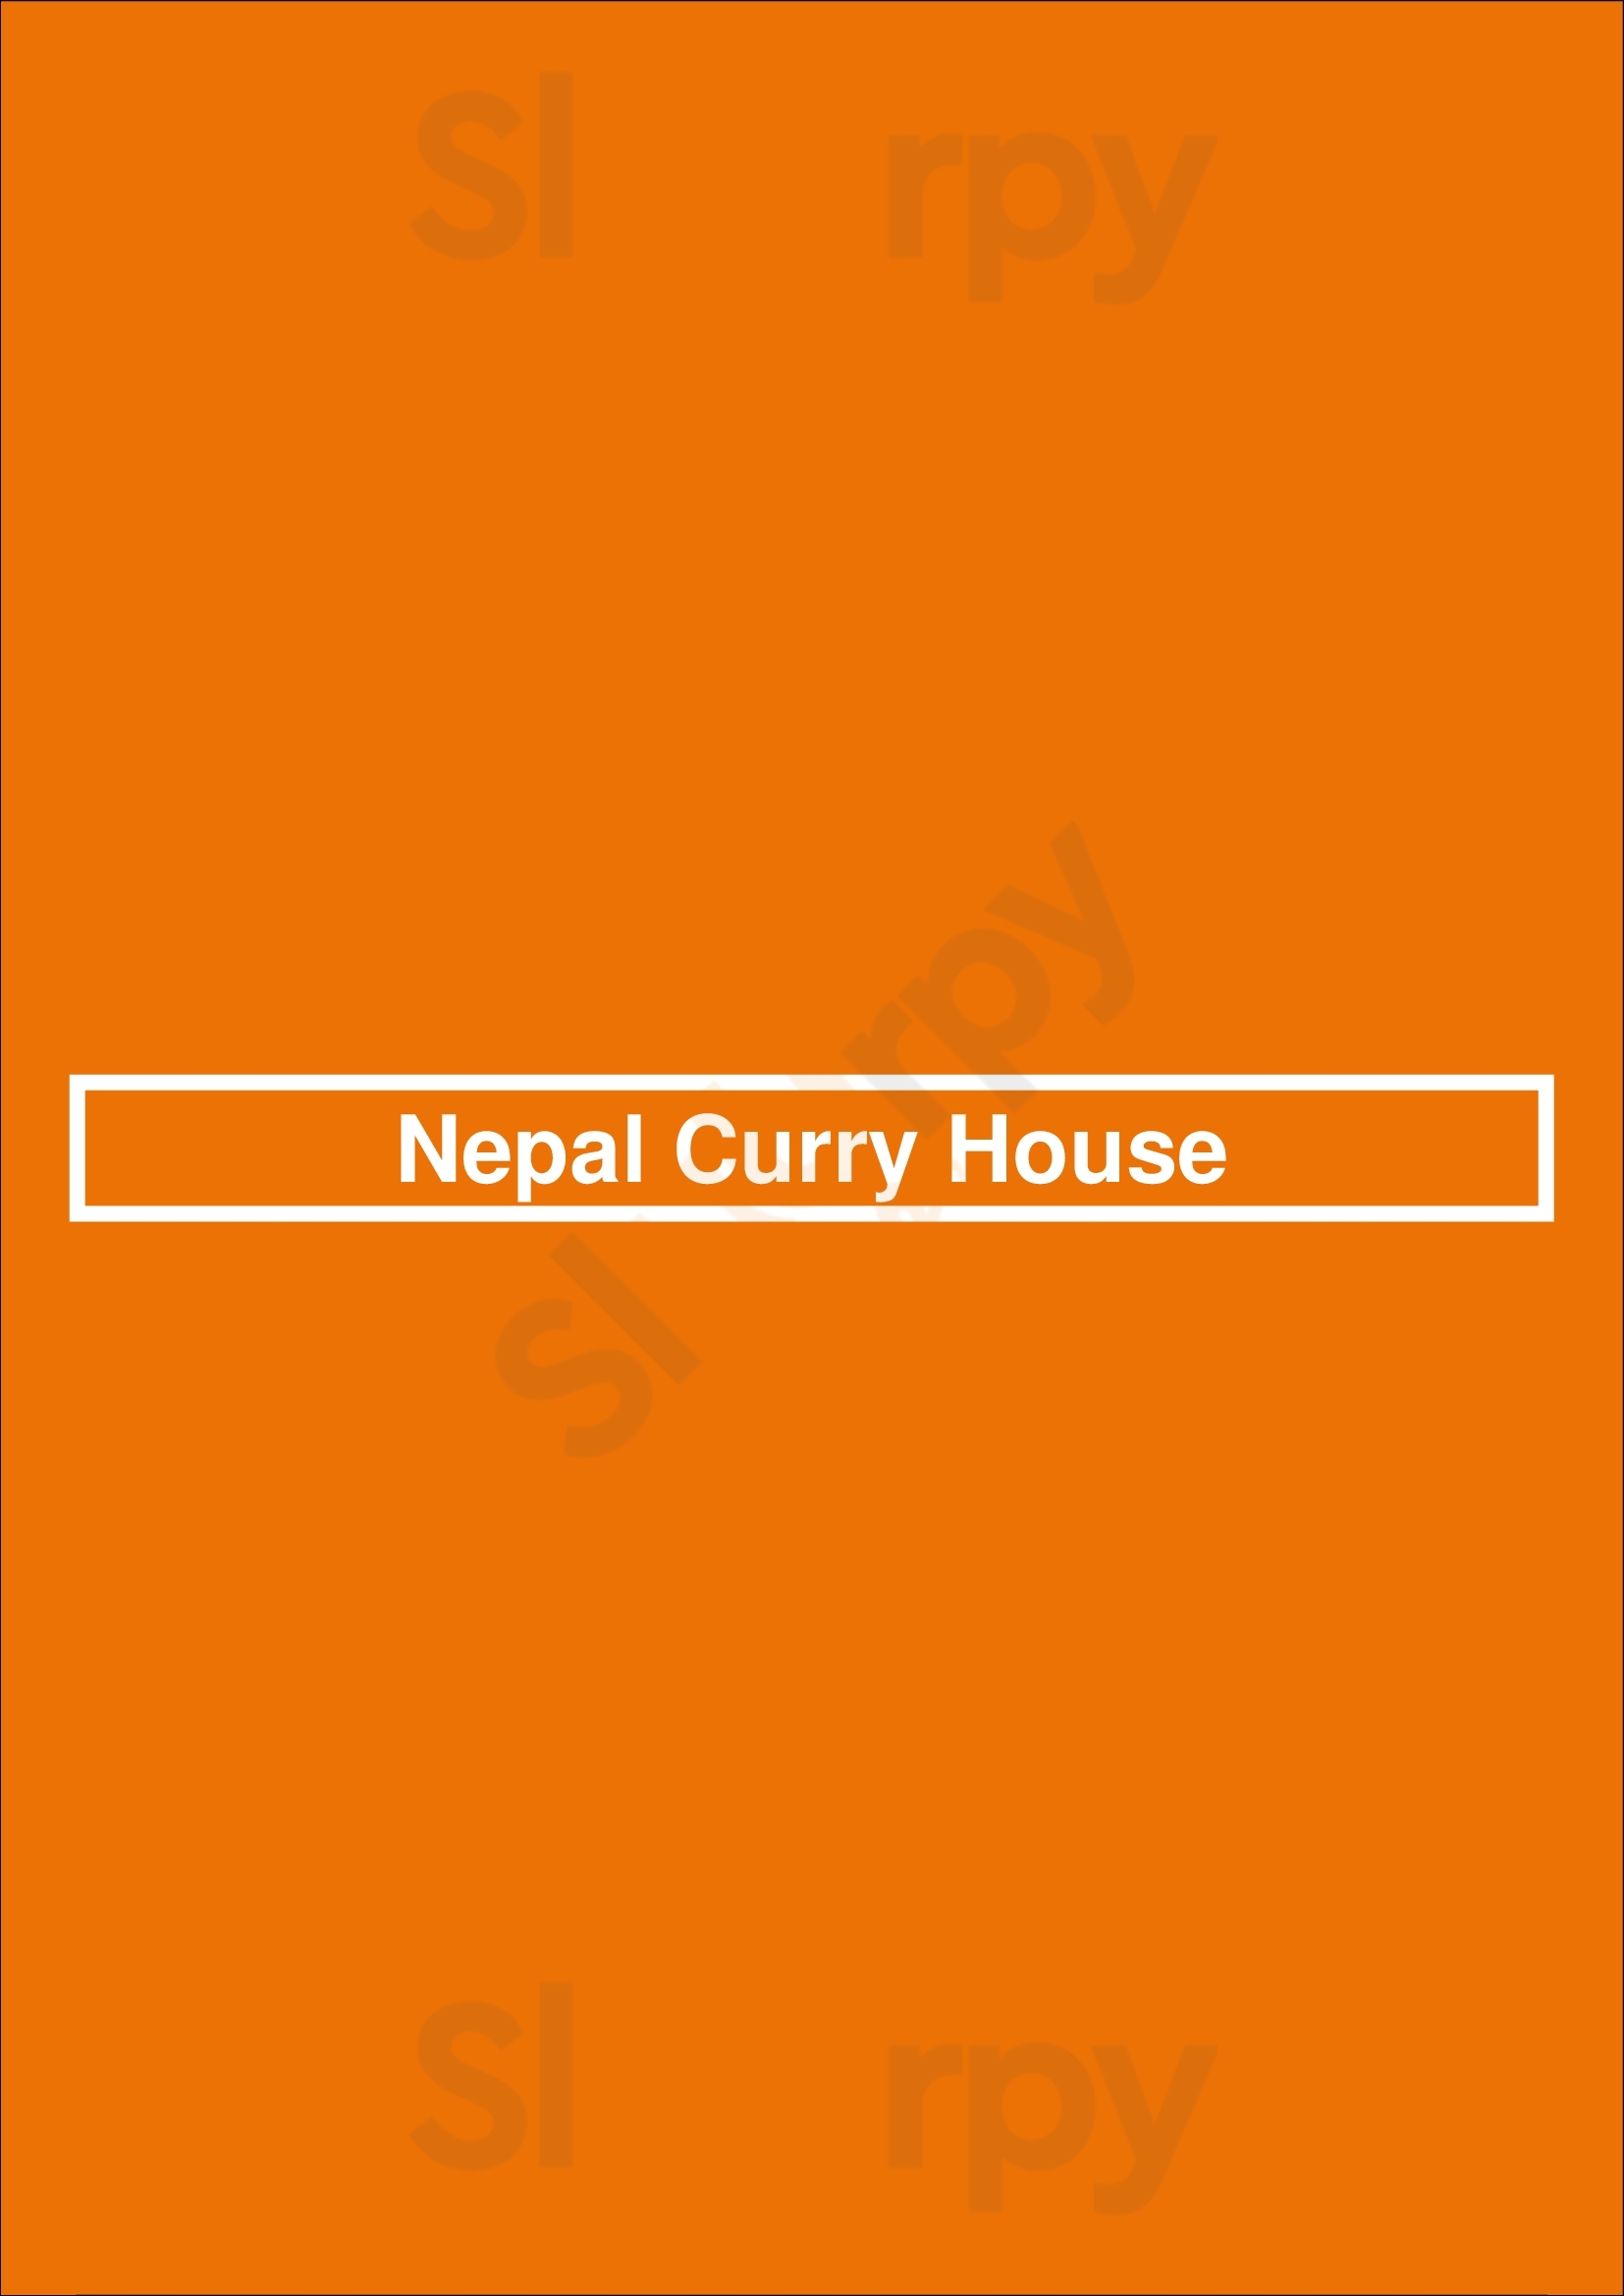 Nepal Curry House Lisboa Menu - 1